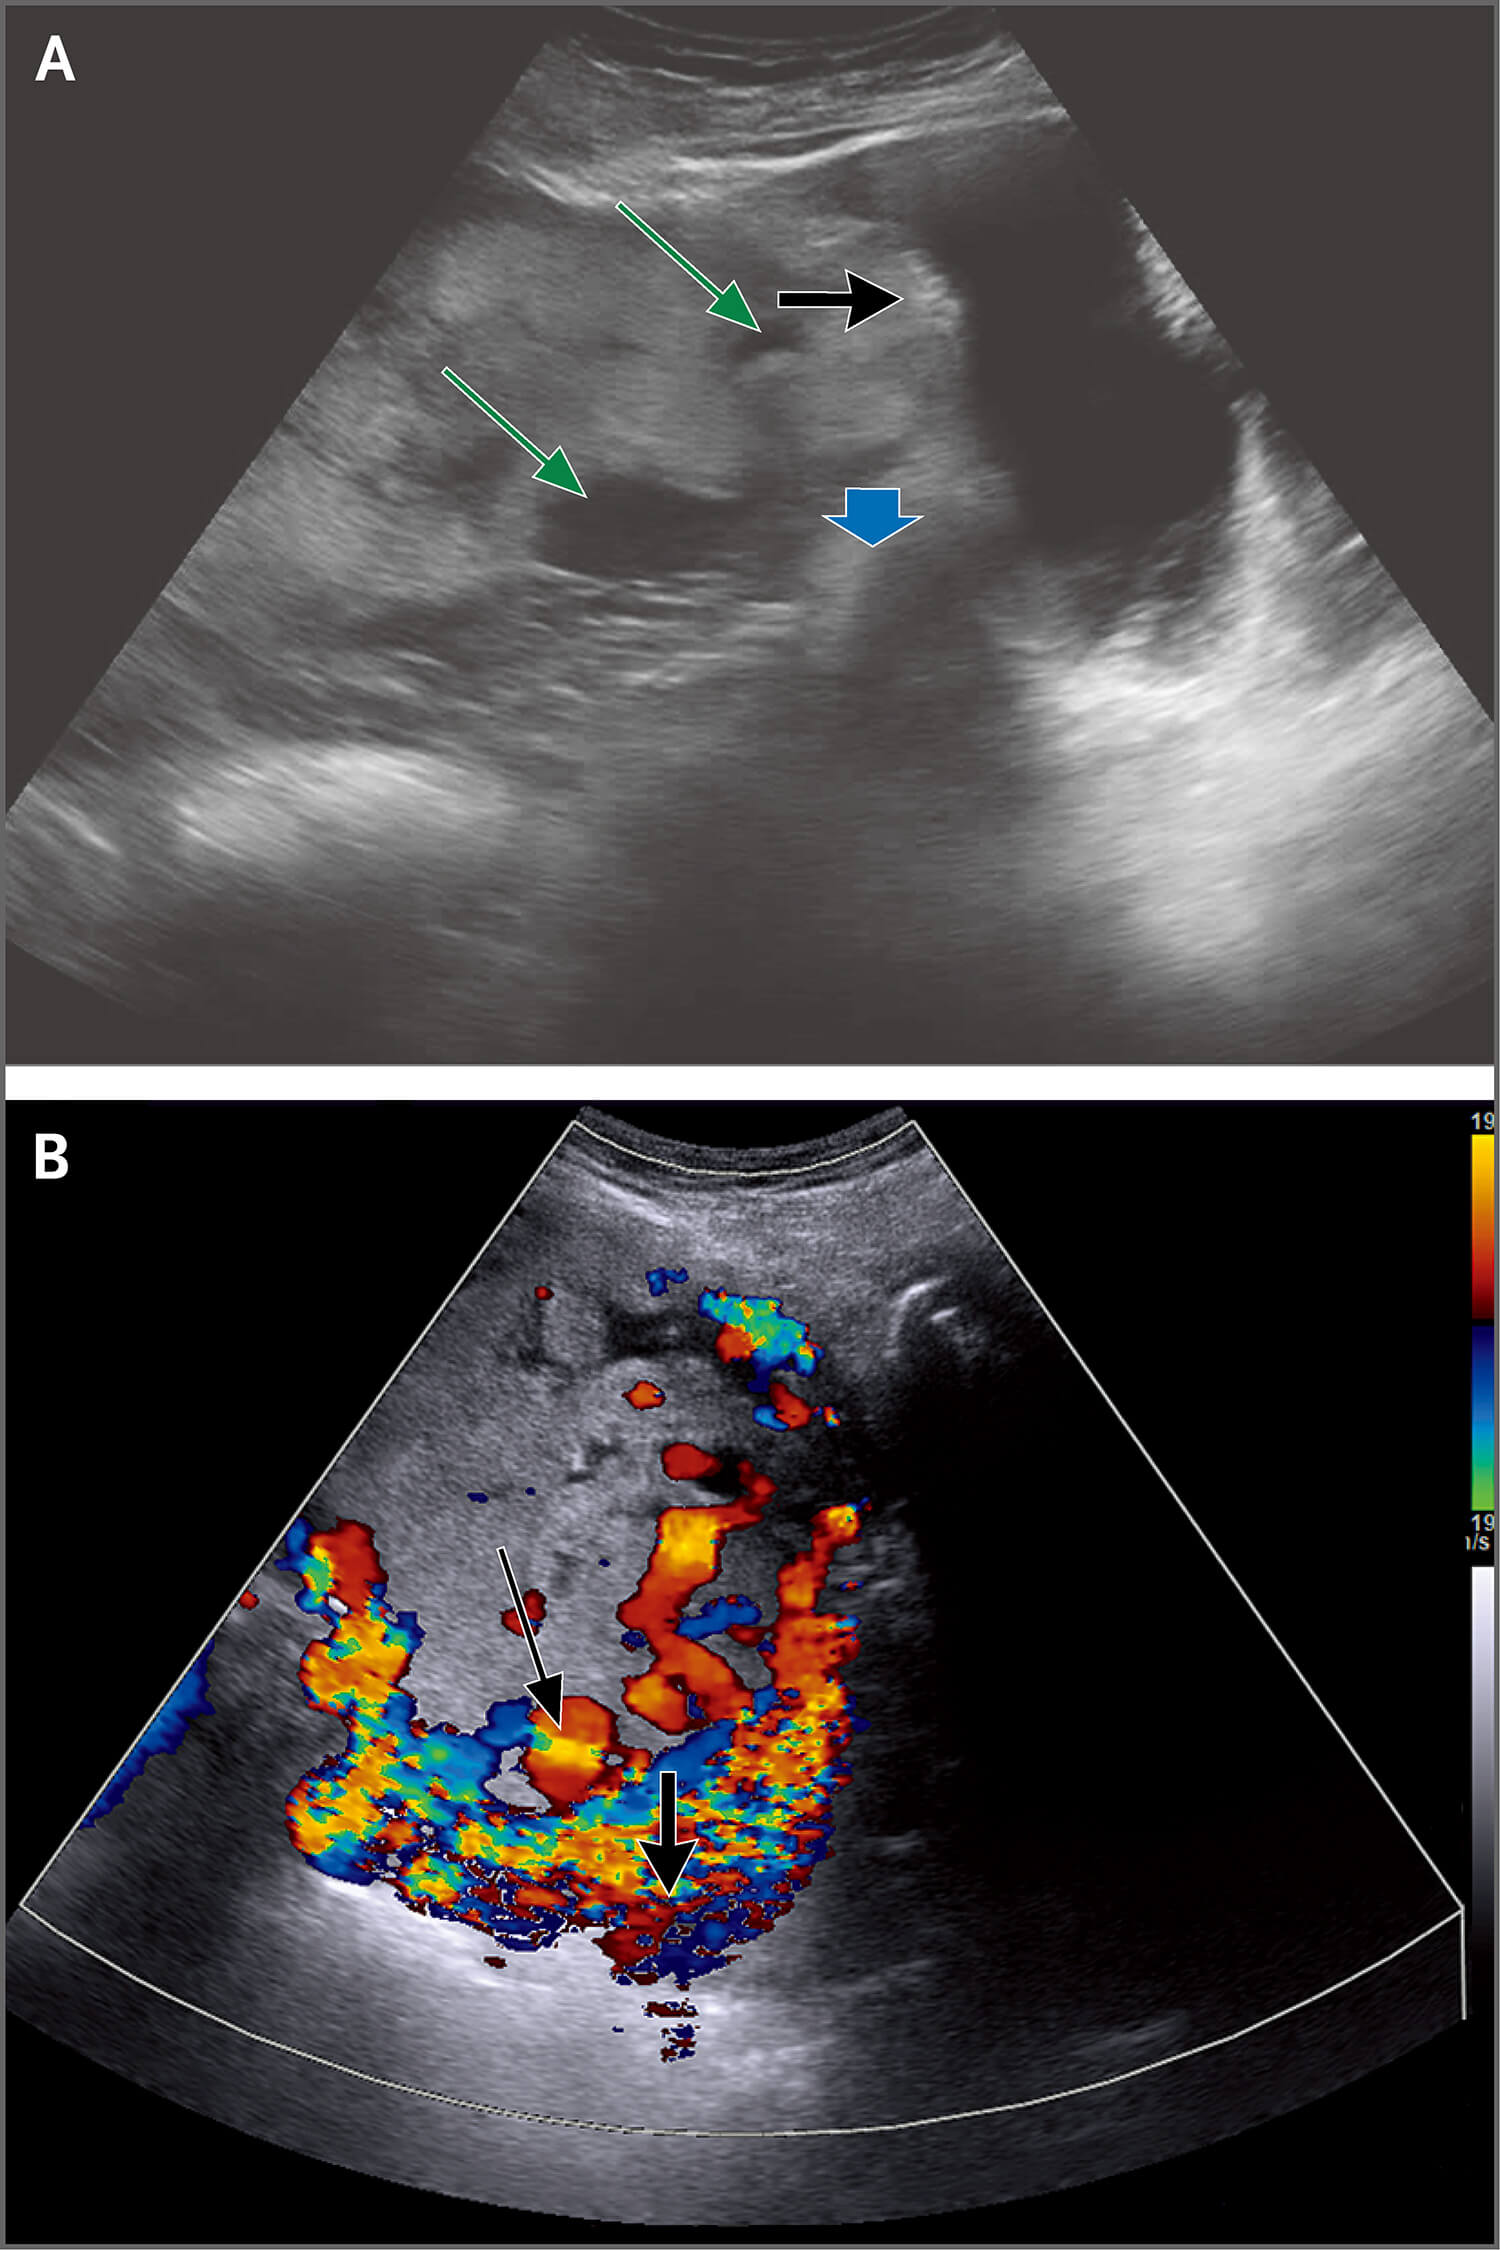 灰阶超声影像显示前置胎盘(蓝色箭形),多个血管腔隙(绿色箭形)和子宫